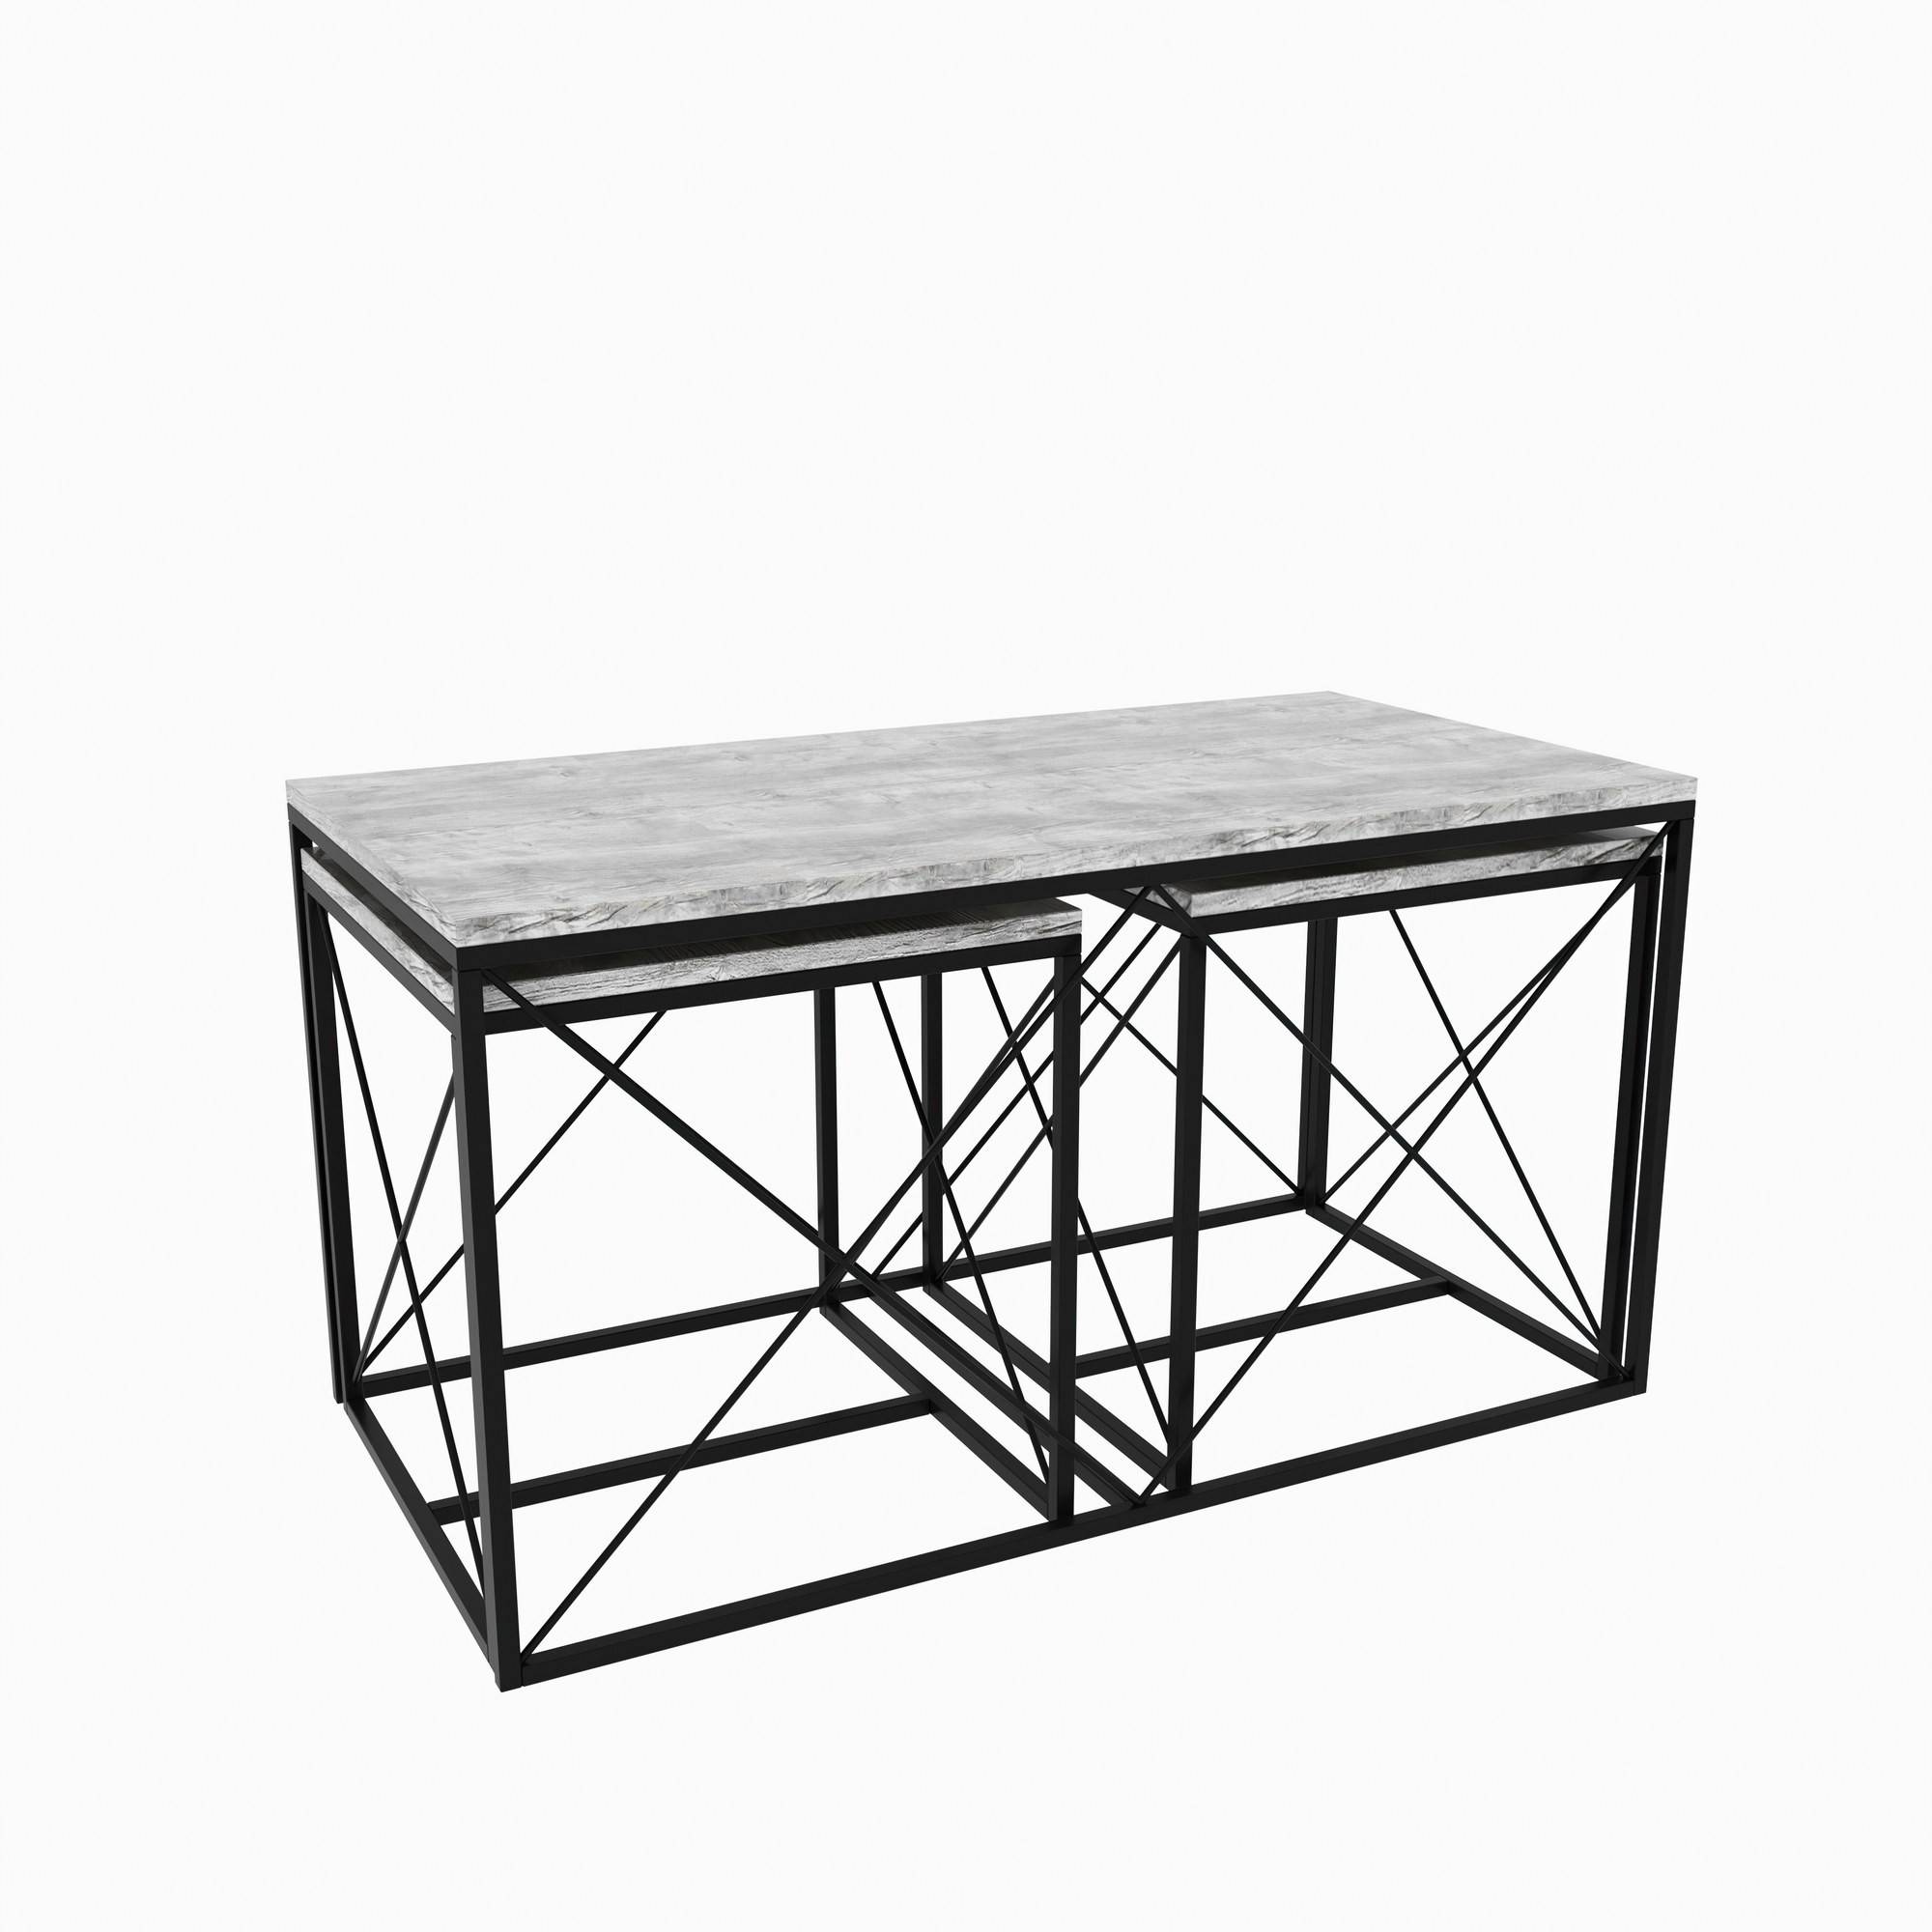 Set di 3 tavolini nidificanti in stile industriale Langkawa in metallo nero e legno grigio chiaro